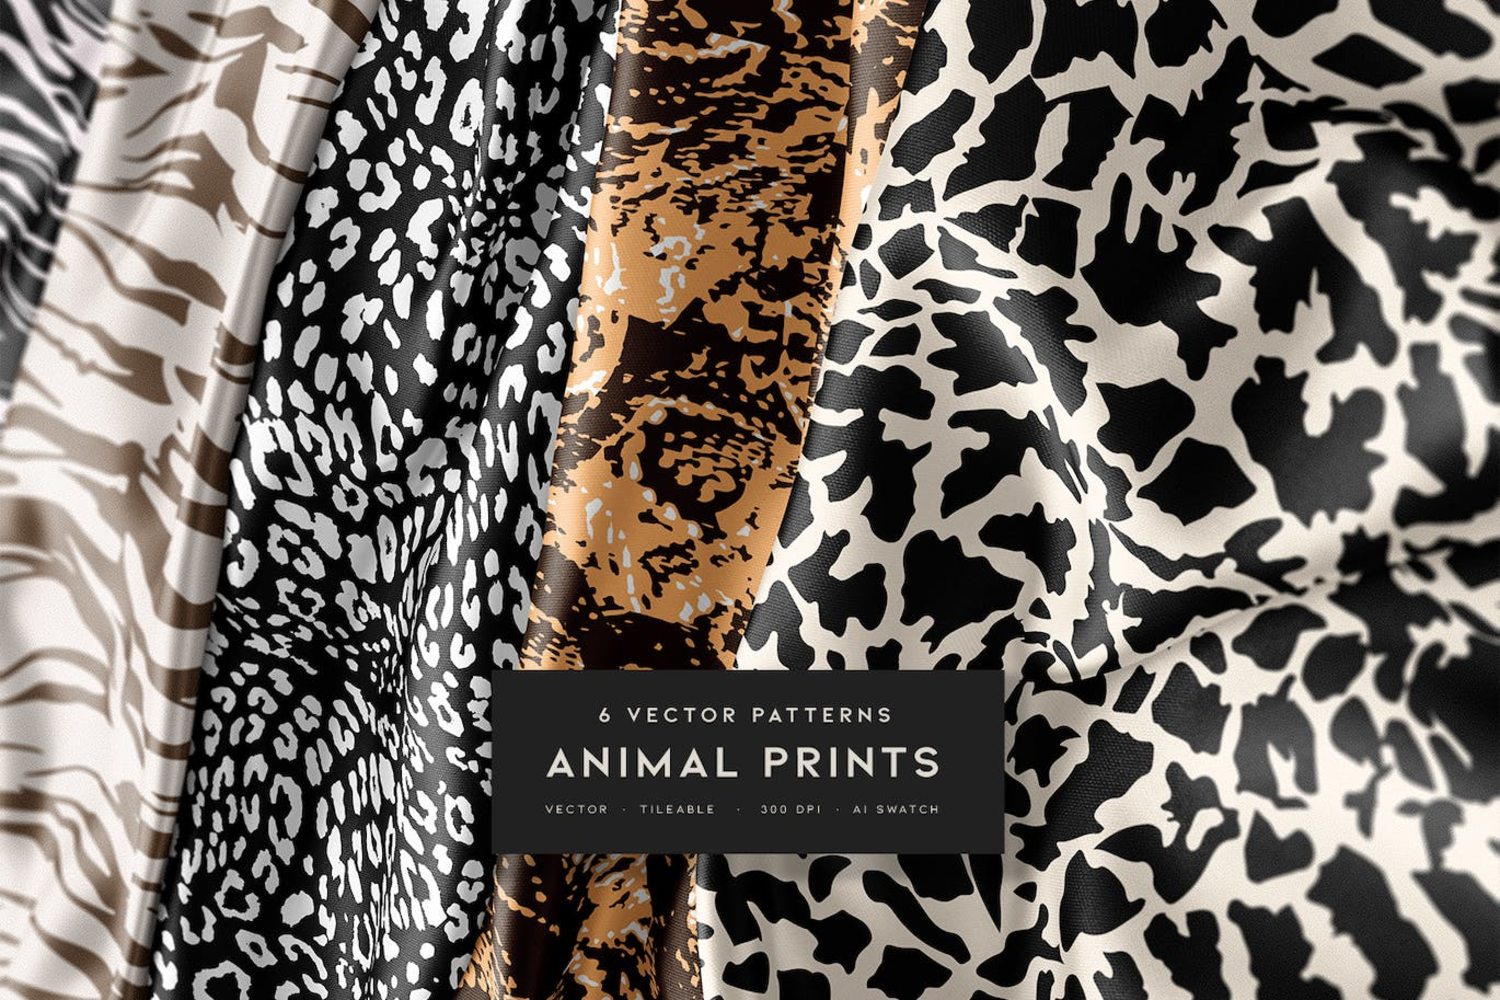 5272 6种动物皮肤豹纹纹矢量图案 6 Animal Prints Vector Patterns@GOOODME.COM